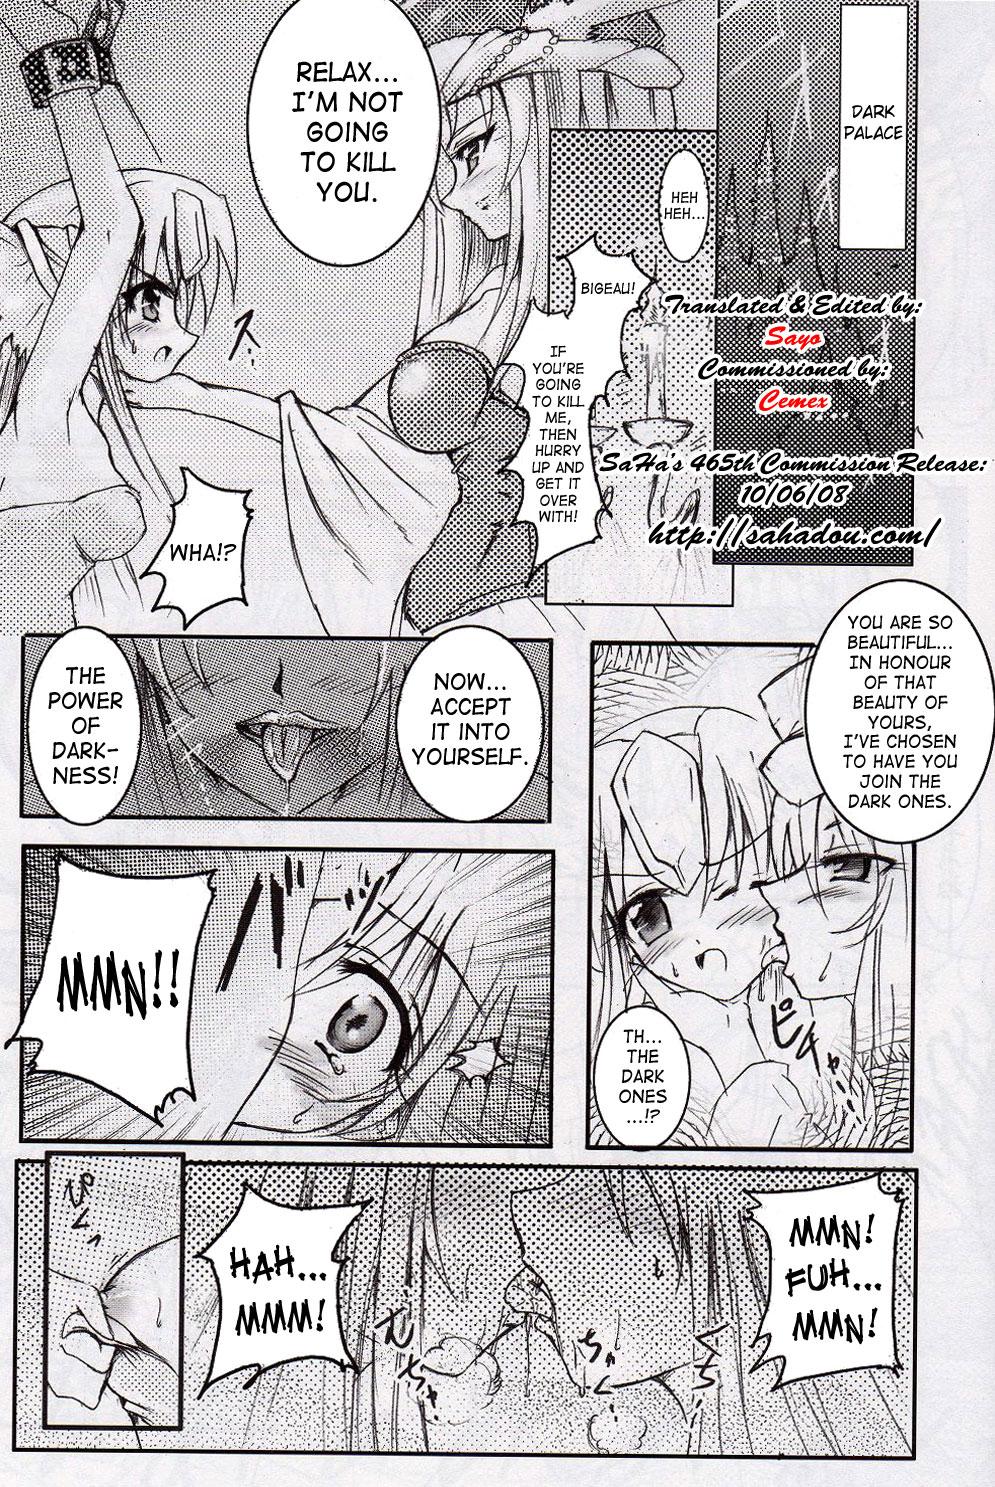 Twinks Demon Wolf's Quickening - Seiken densetsu 3 Rica - Page 2